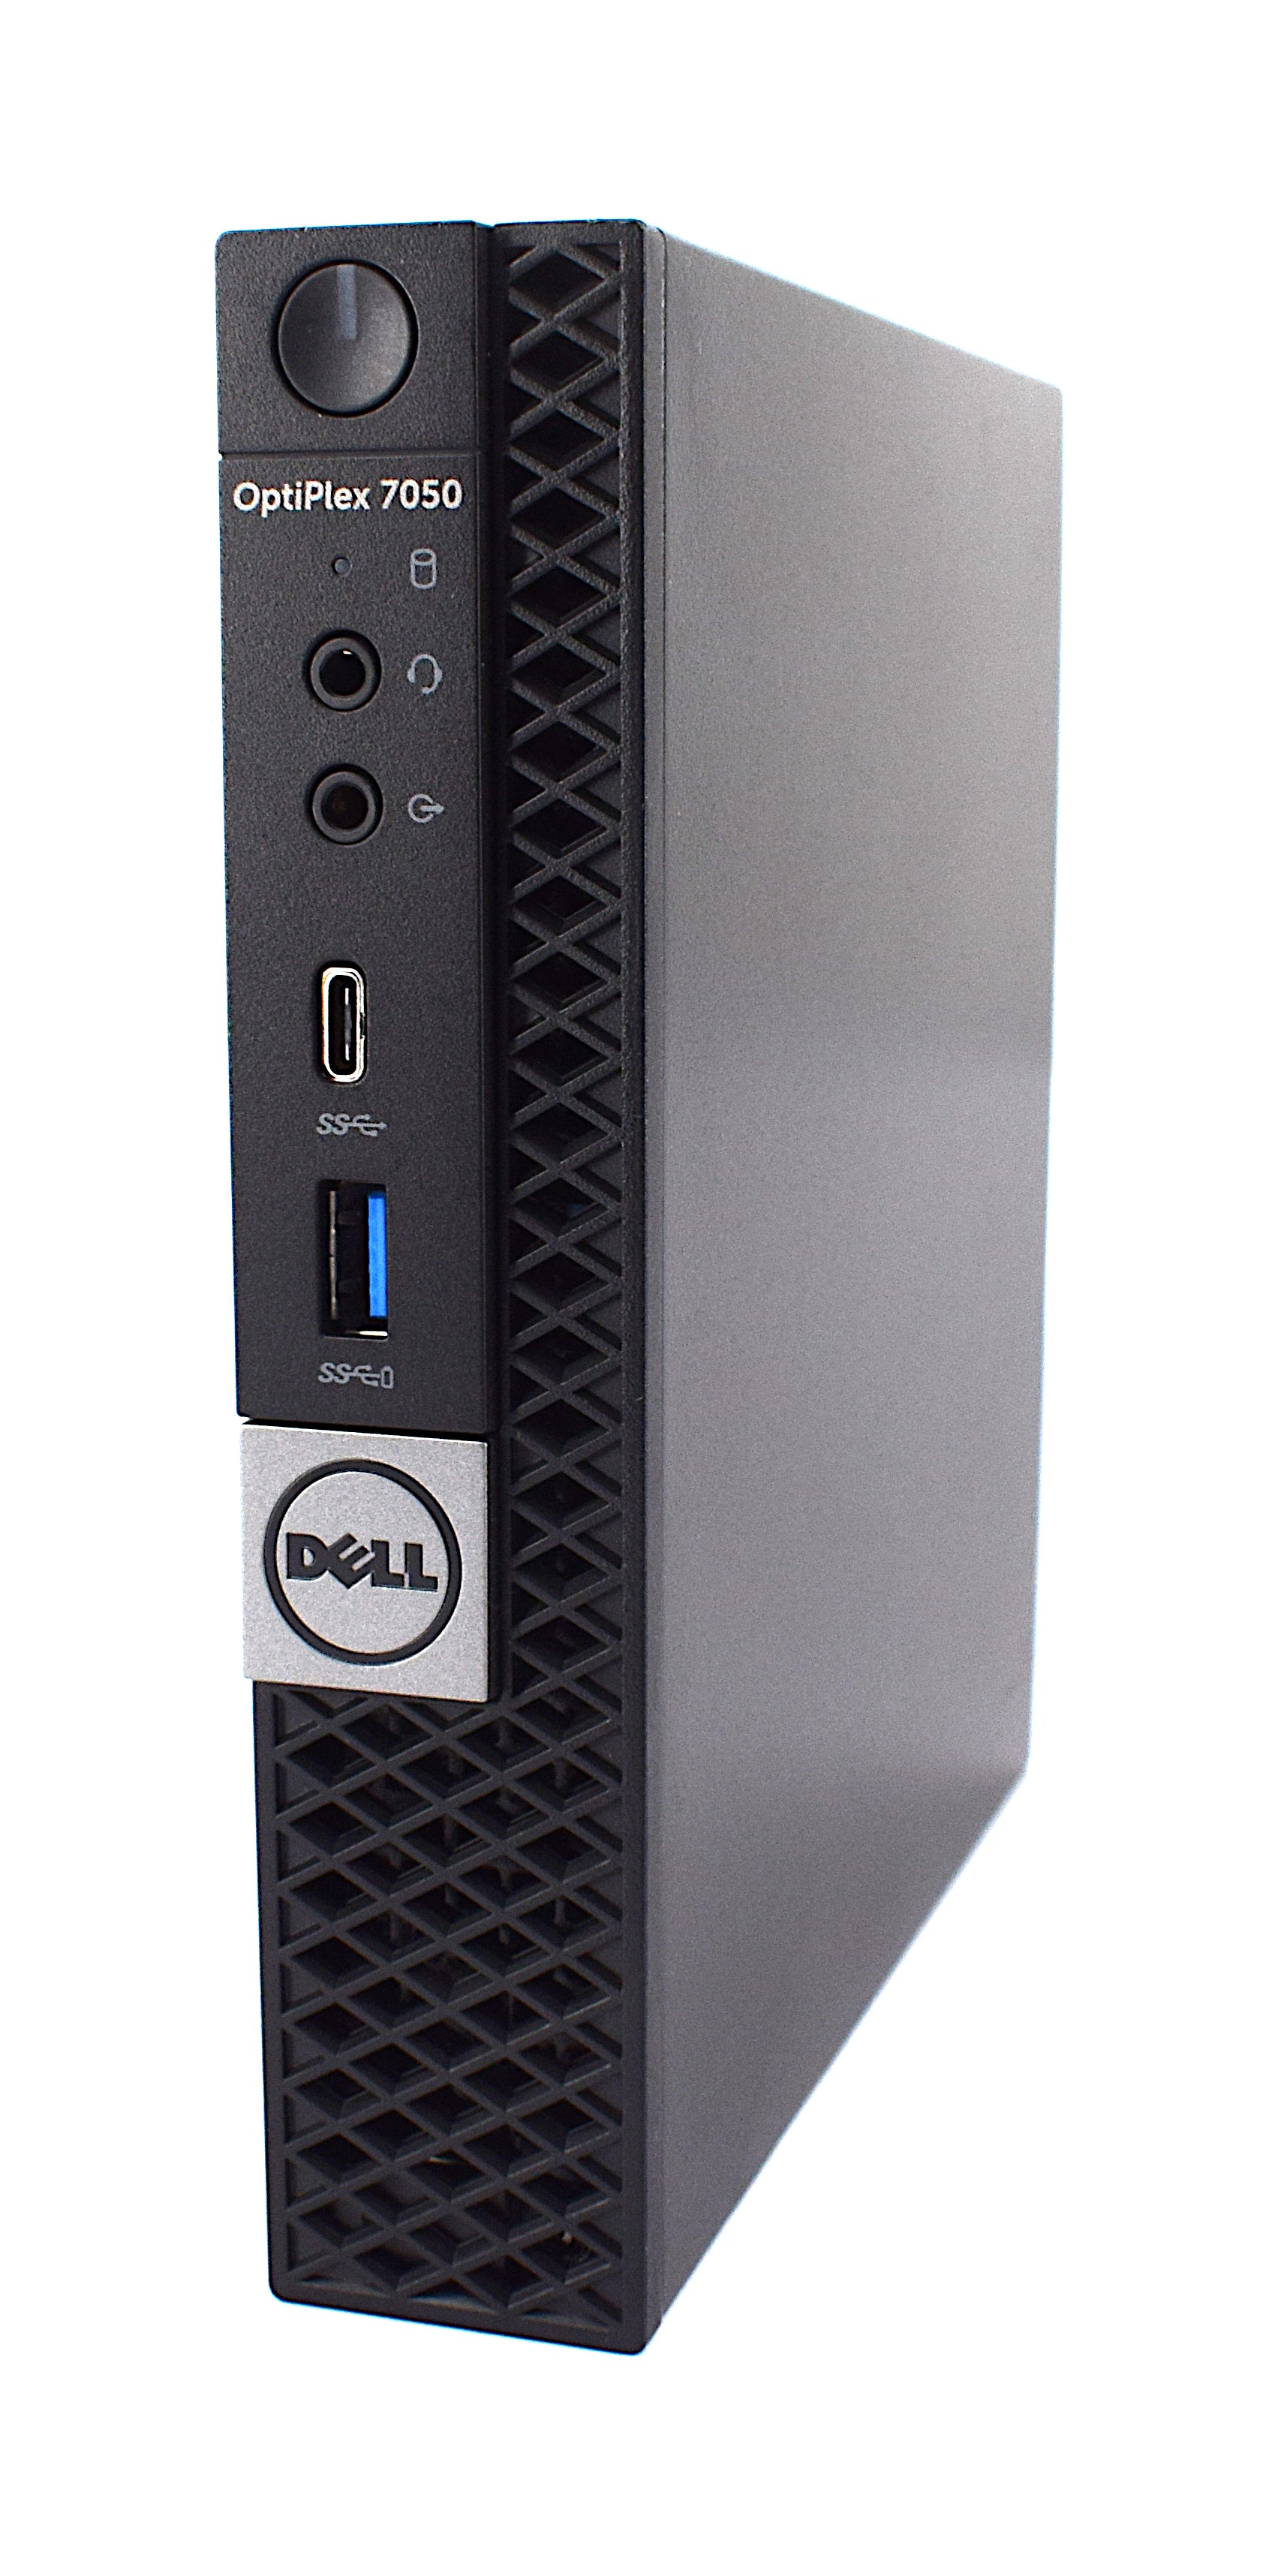 Dell Optiplex 7050 Micro PC, Core i7 7th Gen, 8GB RAM, 128GB SSD